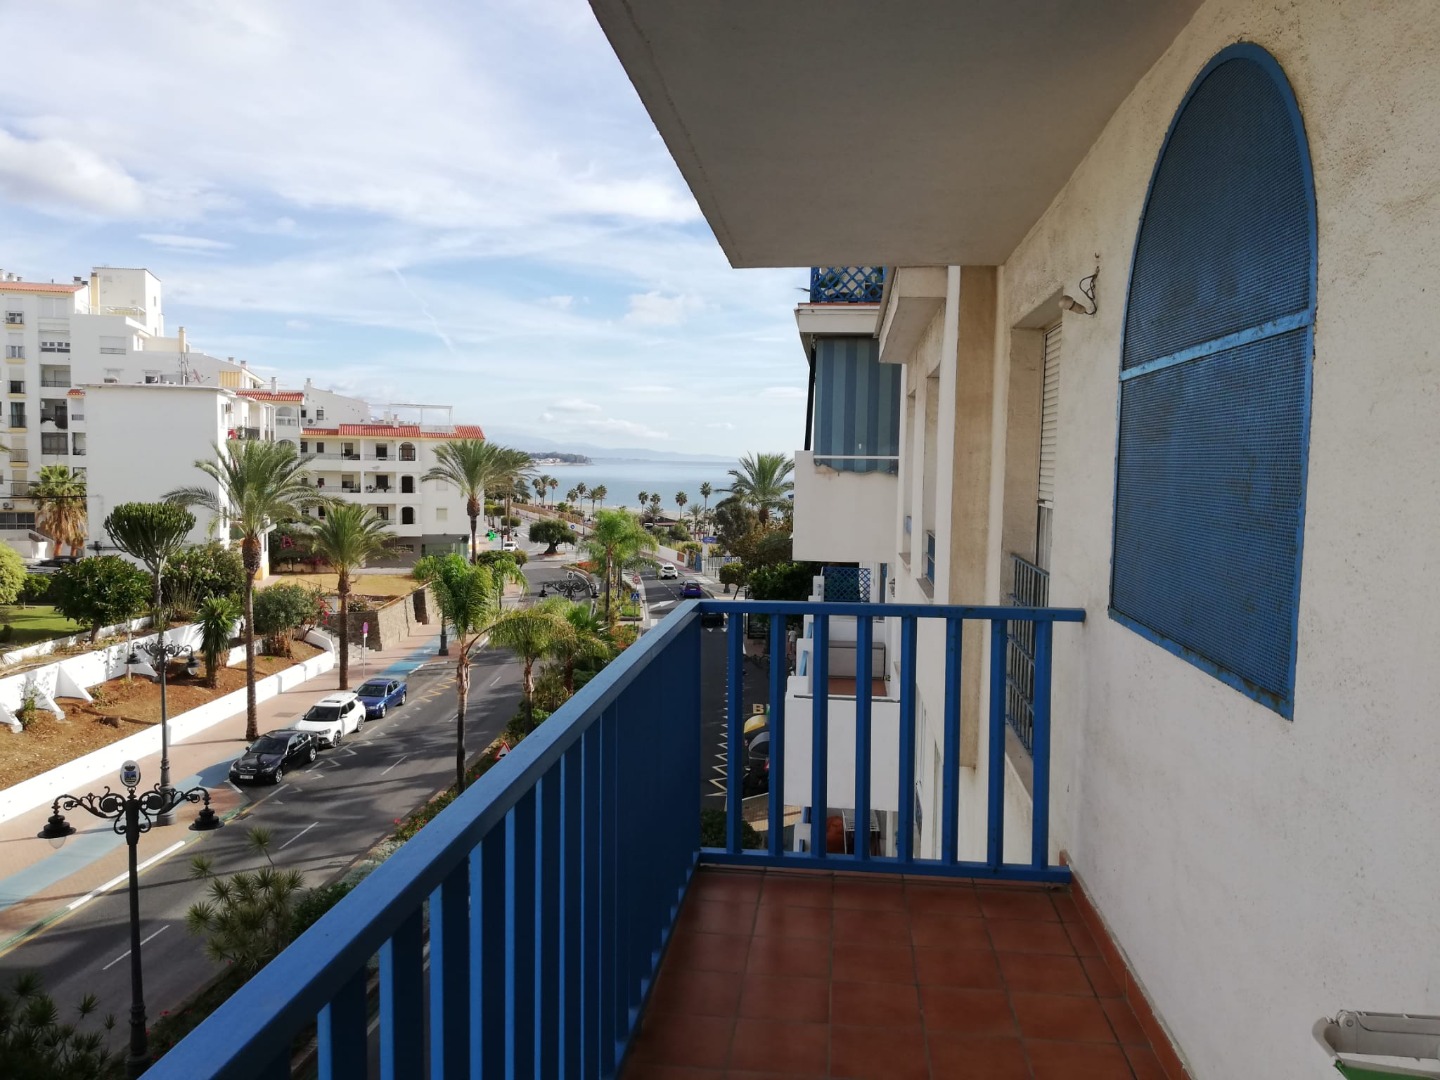 Apartamento de un dormitorio en el puerto de Estepona en primera línea de mar - mibgroup.es